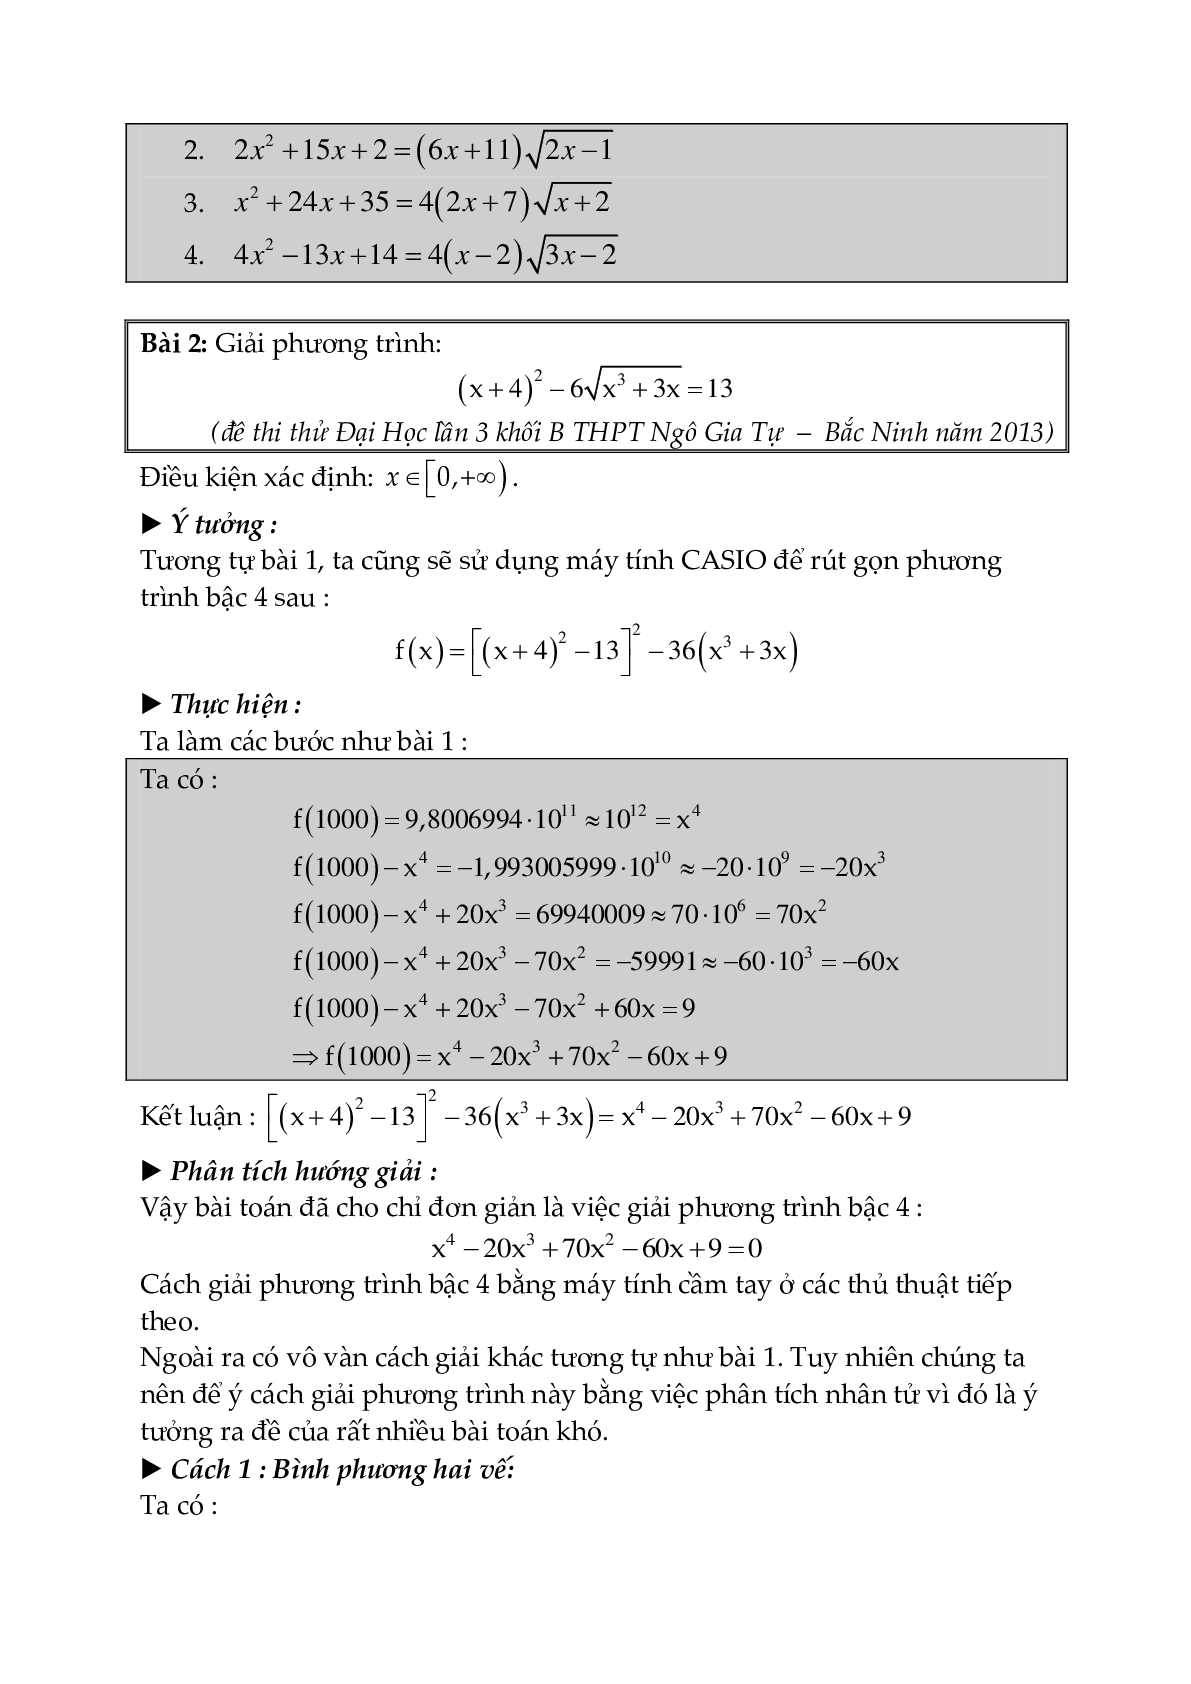 Kĩ năng sử dụng máy tính Casio trong giải toán (trang 6)